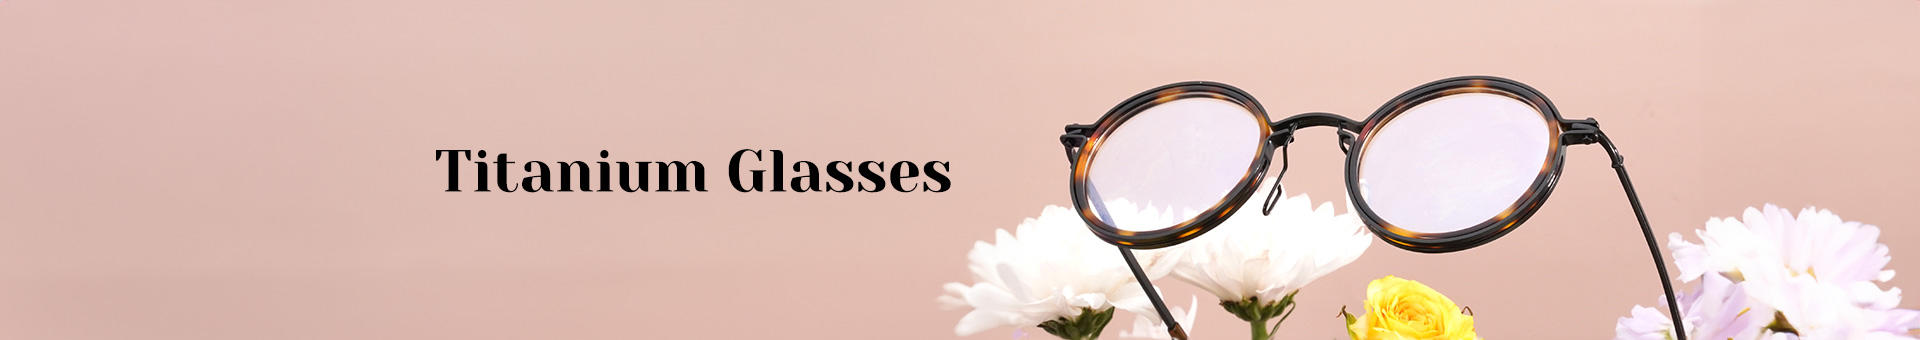 Titanium Glasses